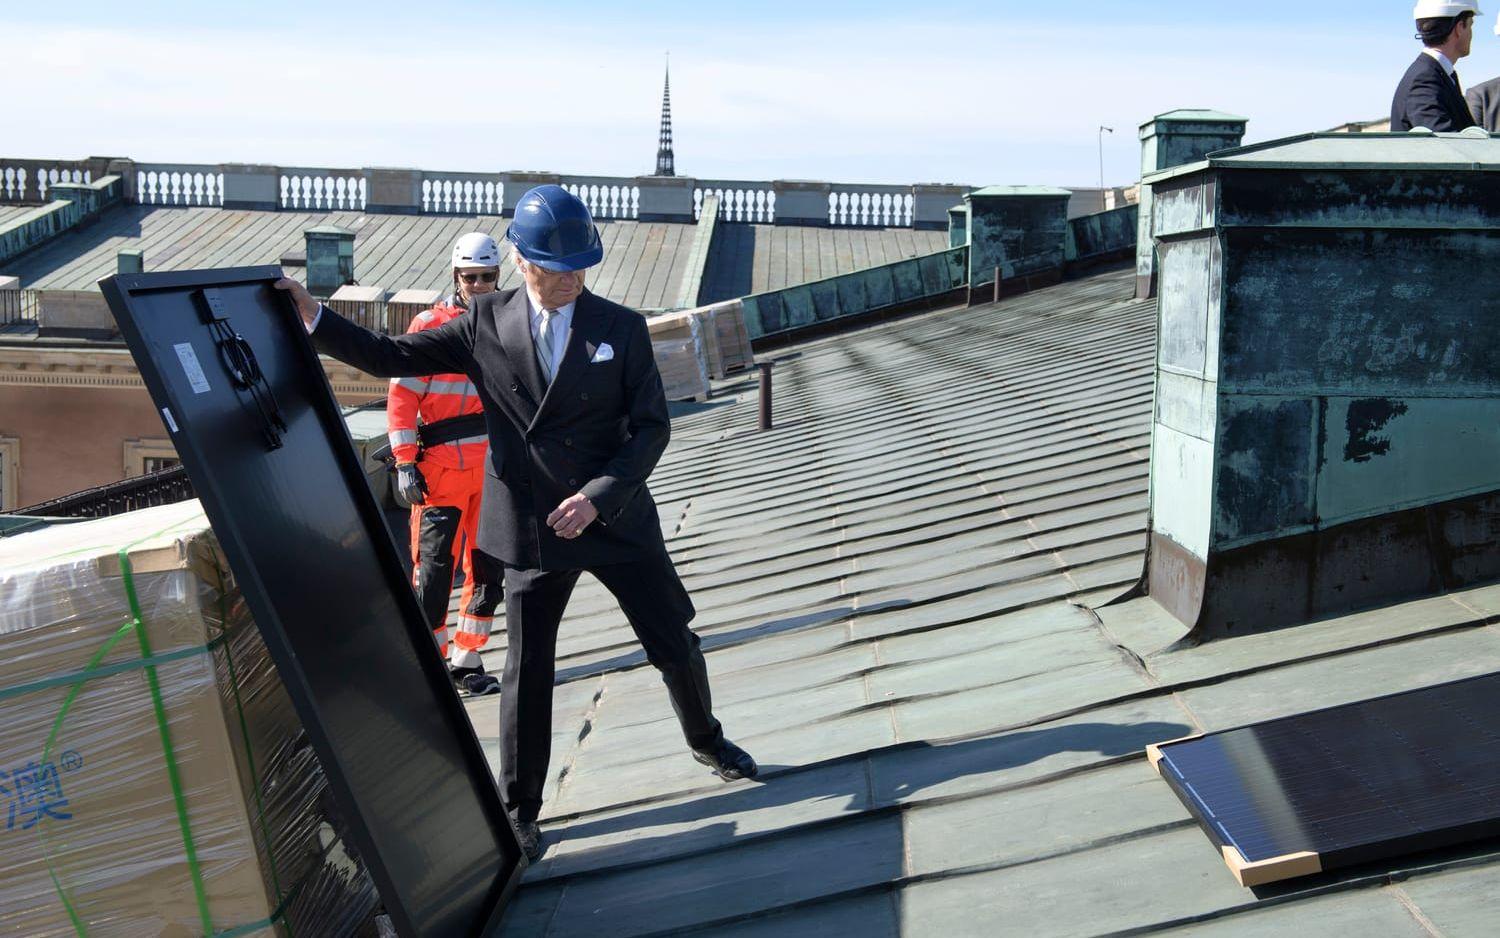 Här hjälper kung Carl XVI Gustaf till att installera solcellspaneler på slottstaket.